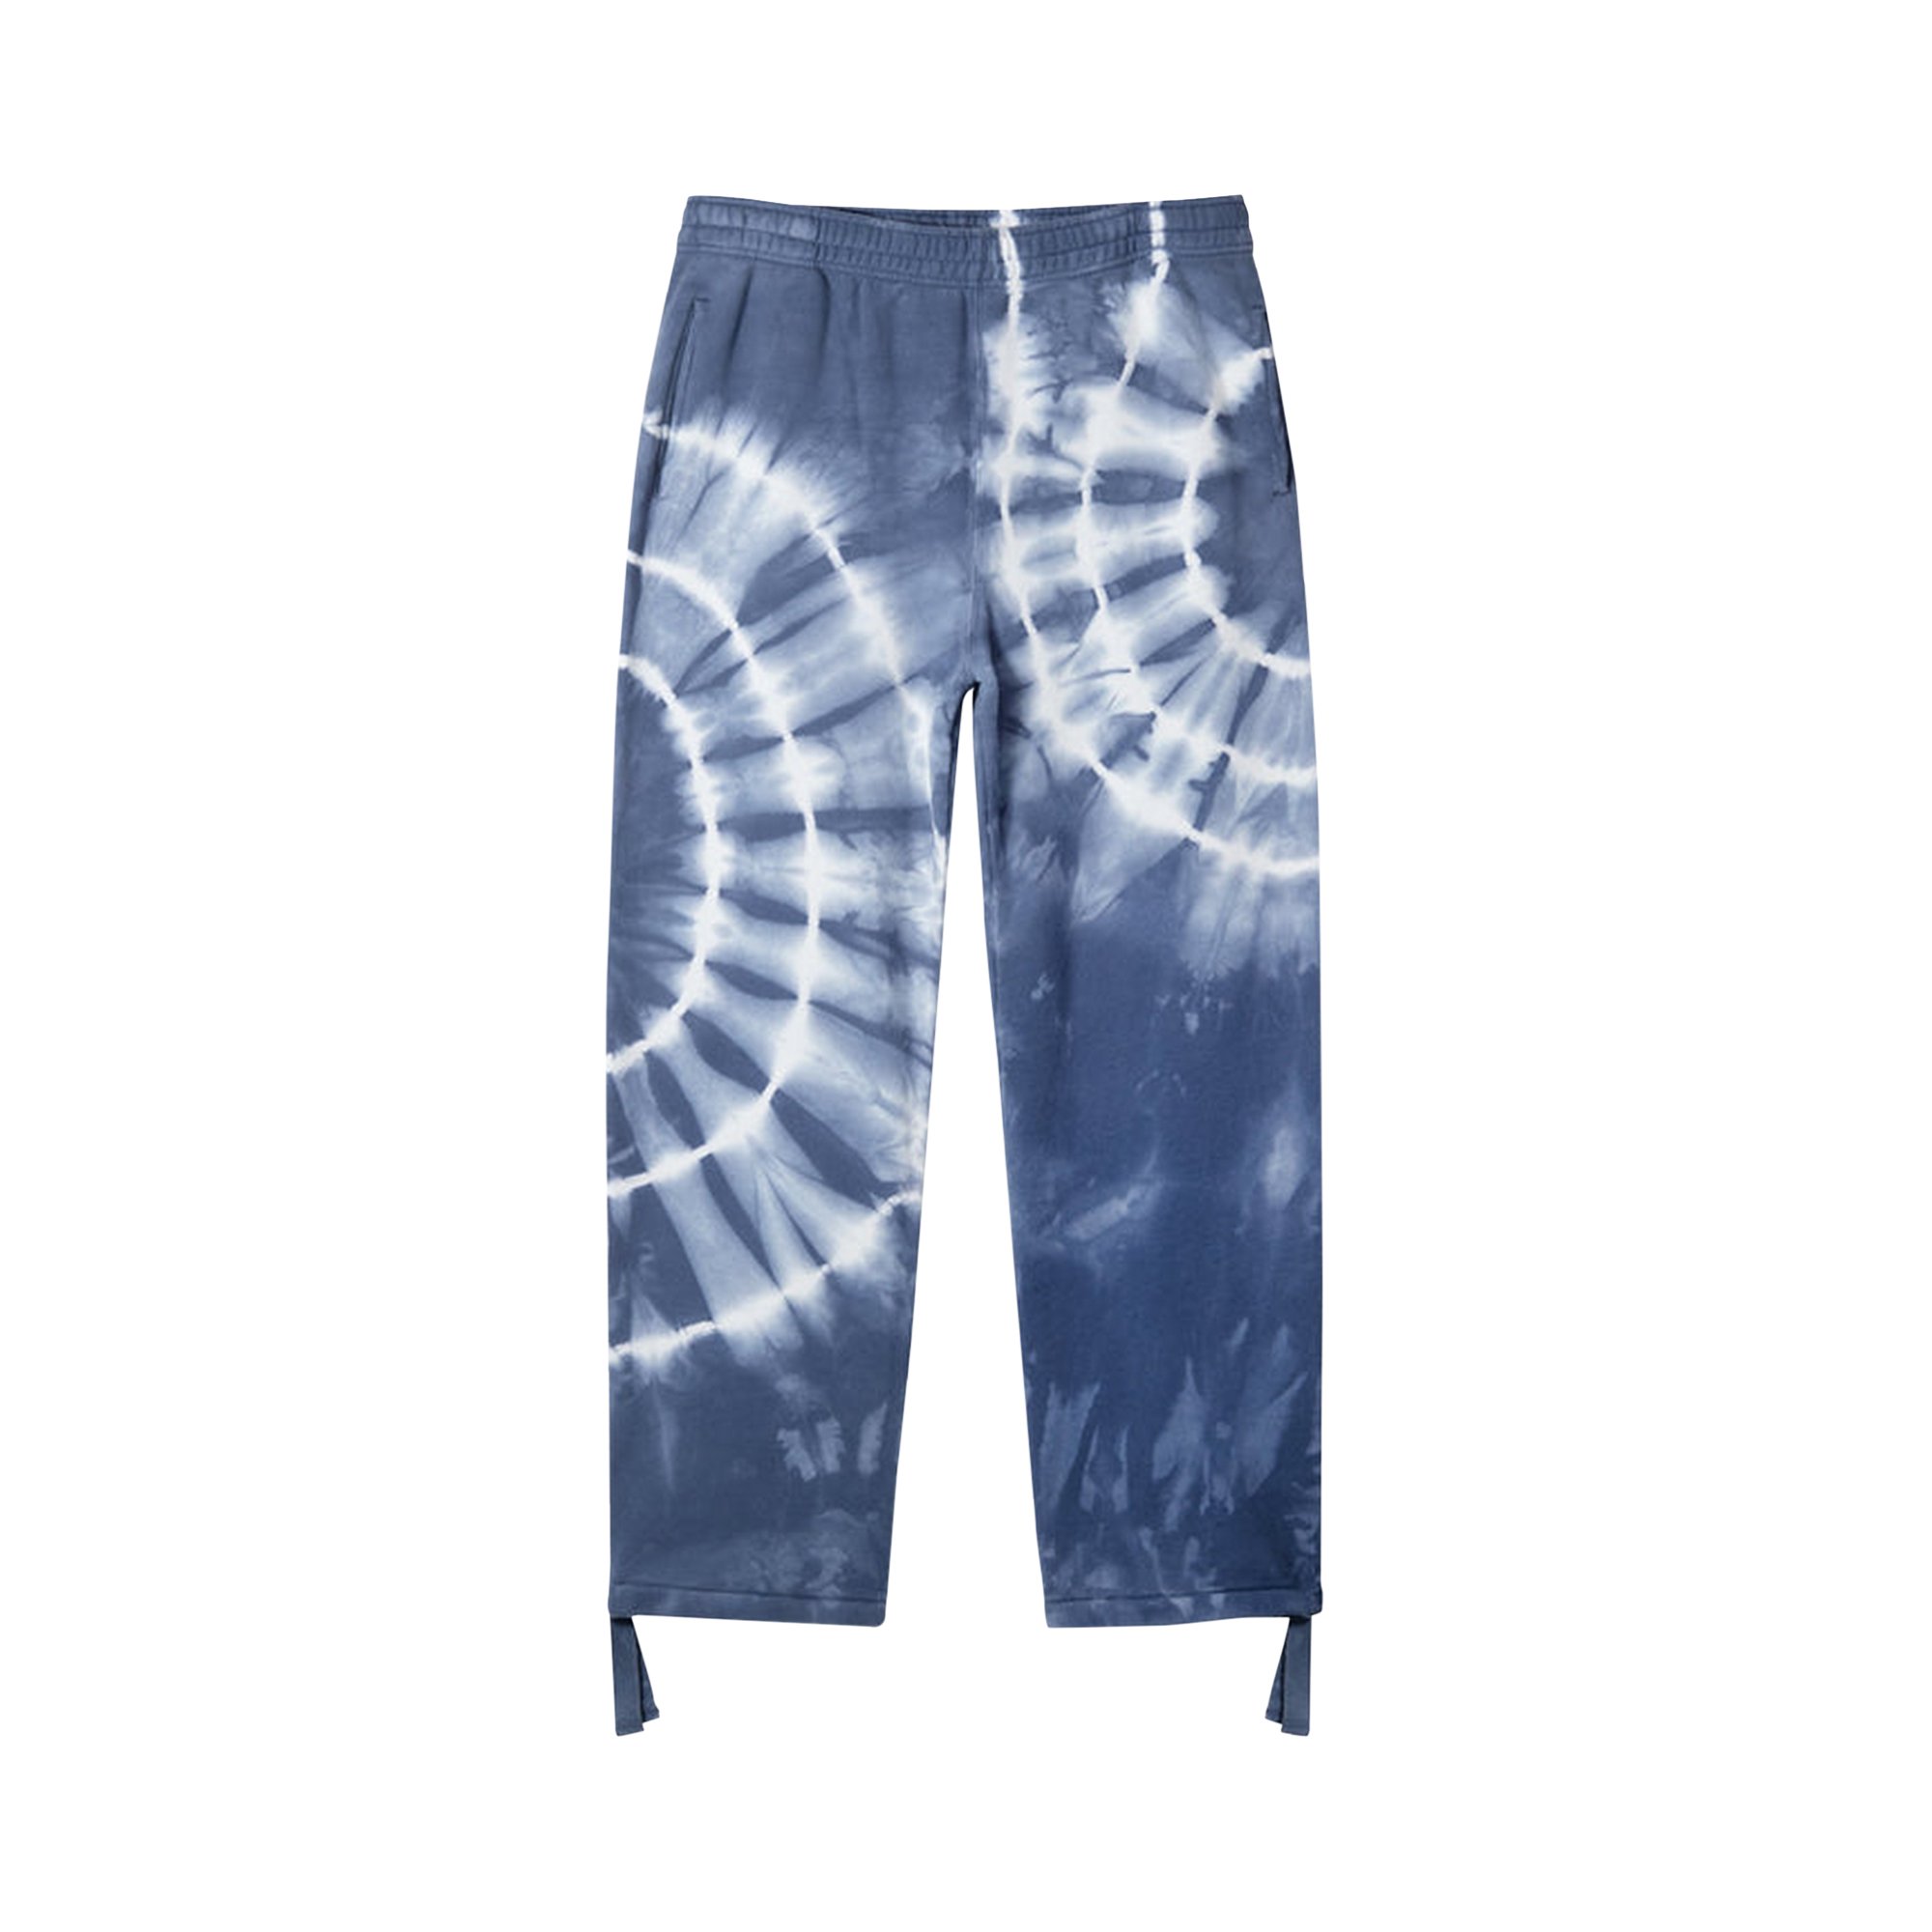 Buy Stussy x Dries Van Noten Tie Dye Pant 'Blue' - 316080 BLUE | GOAT